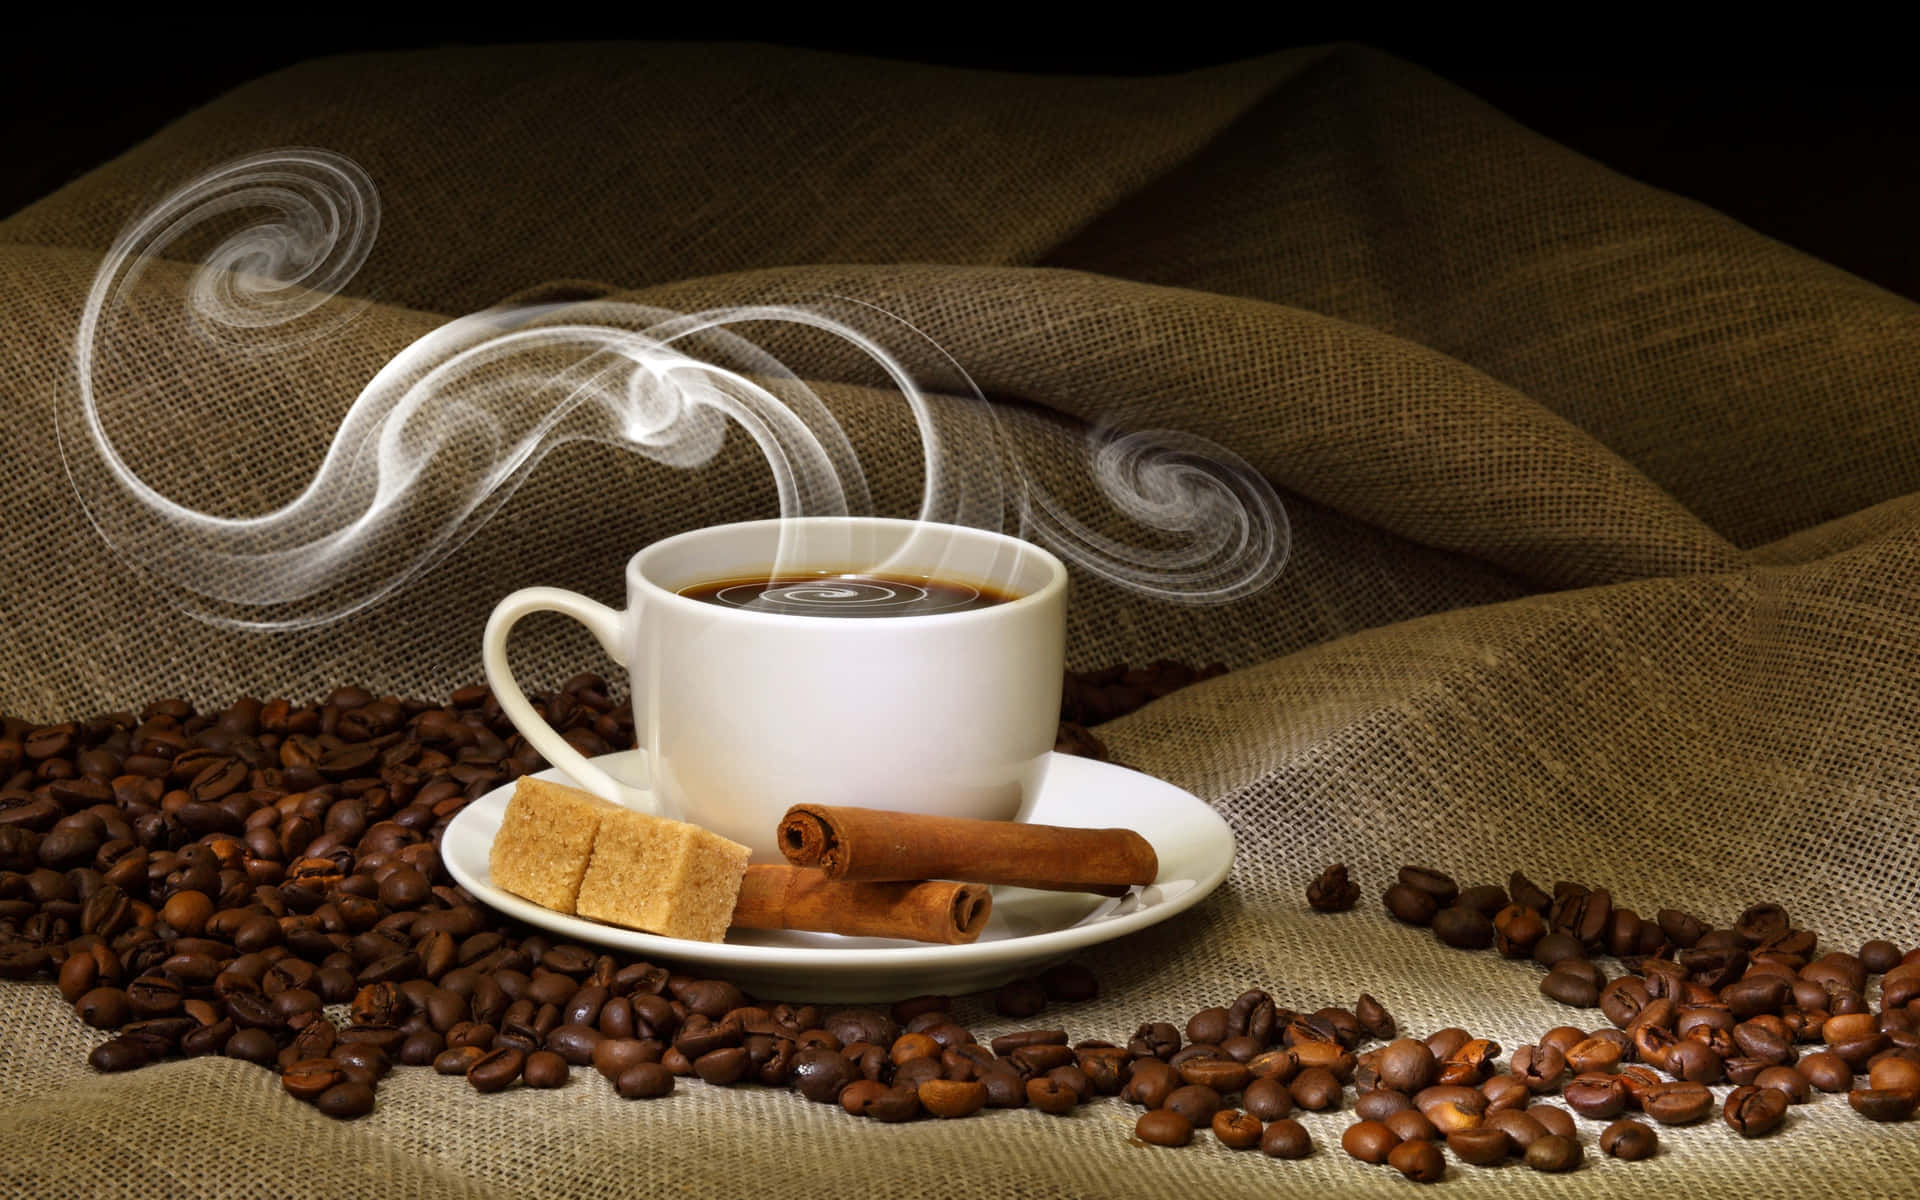 Kaffebilleder giver en smag af kaffe og dets dufte.